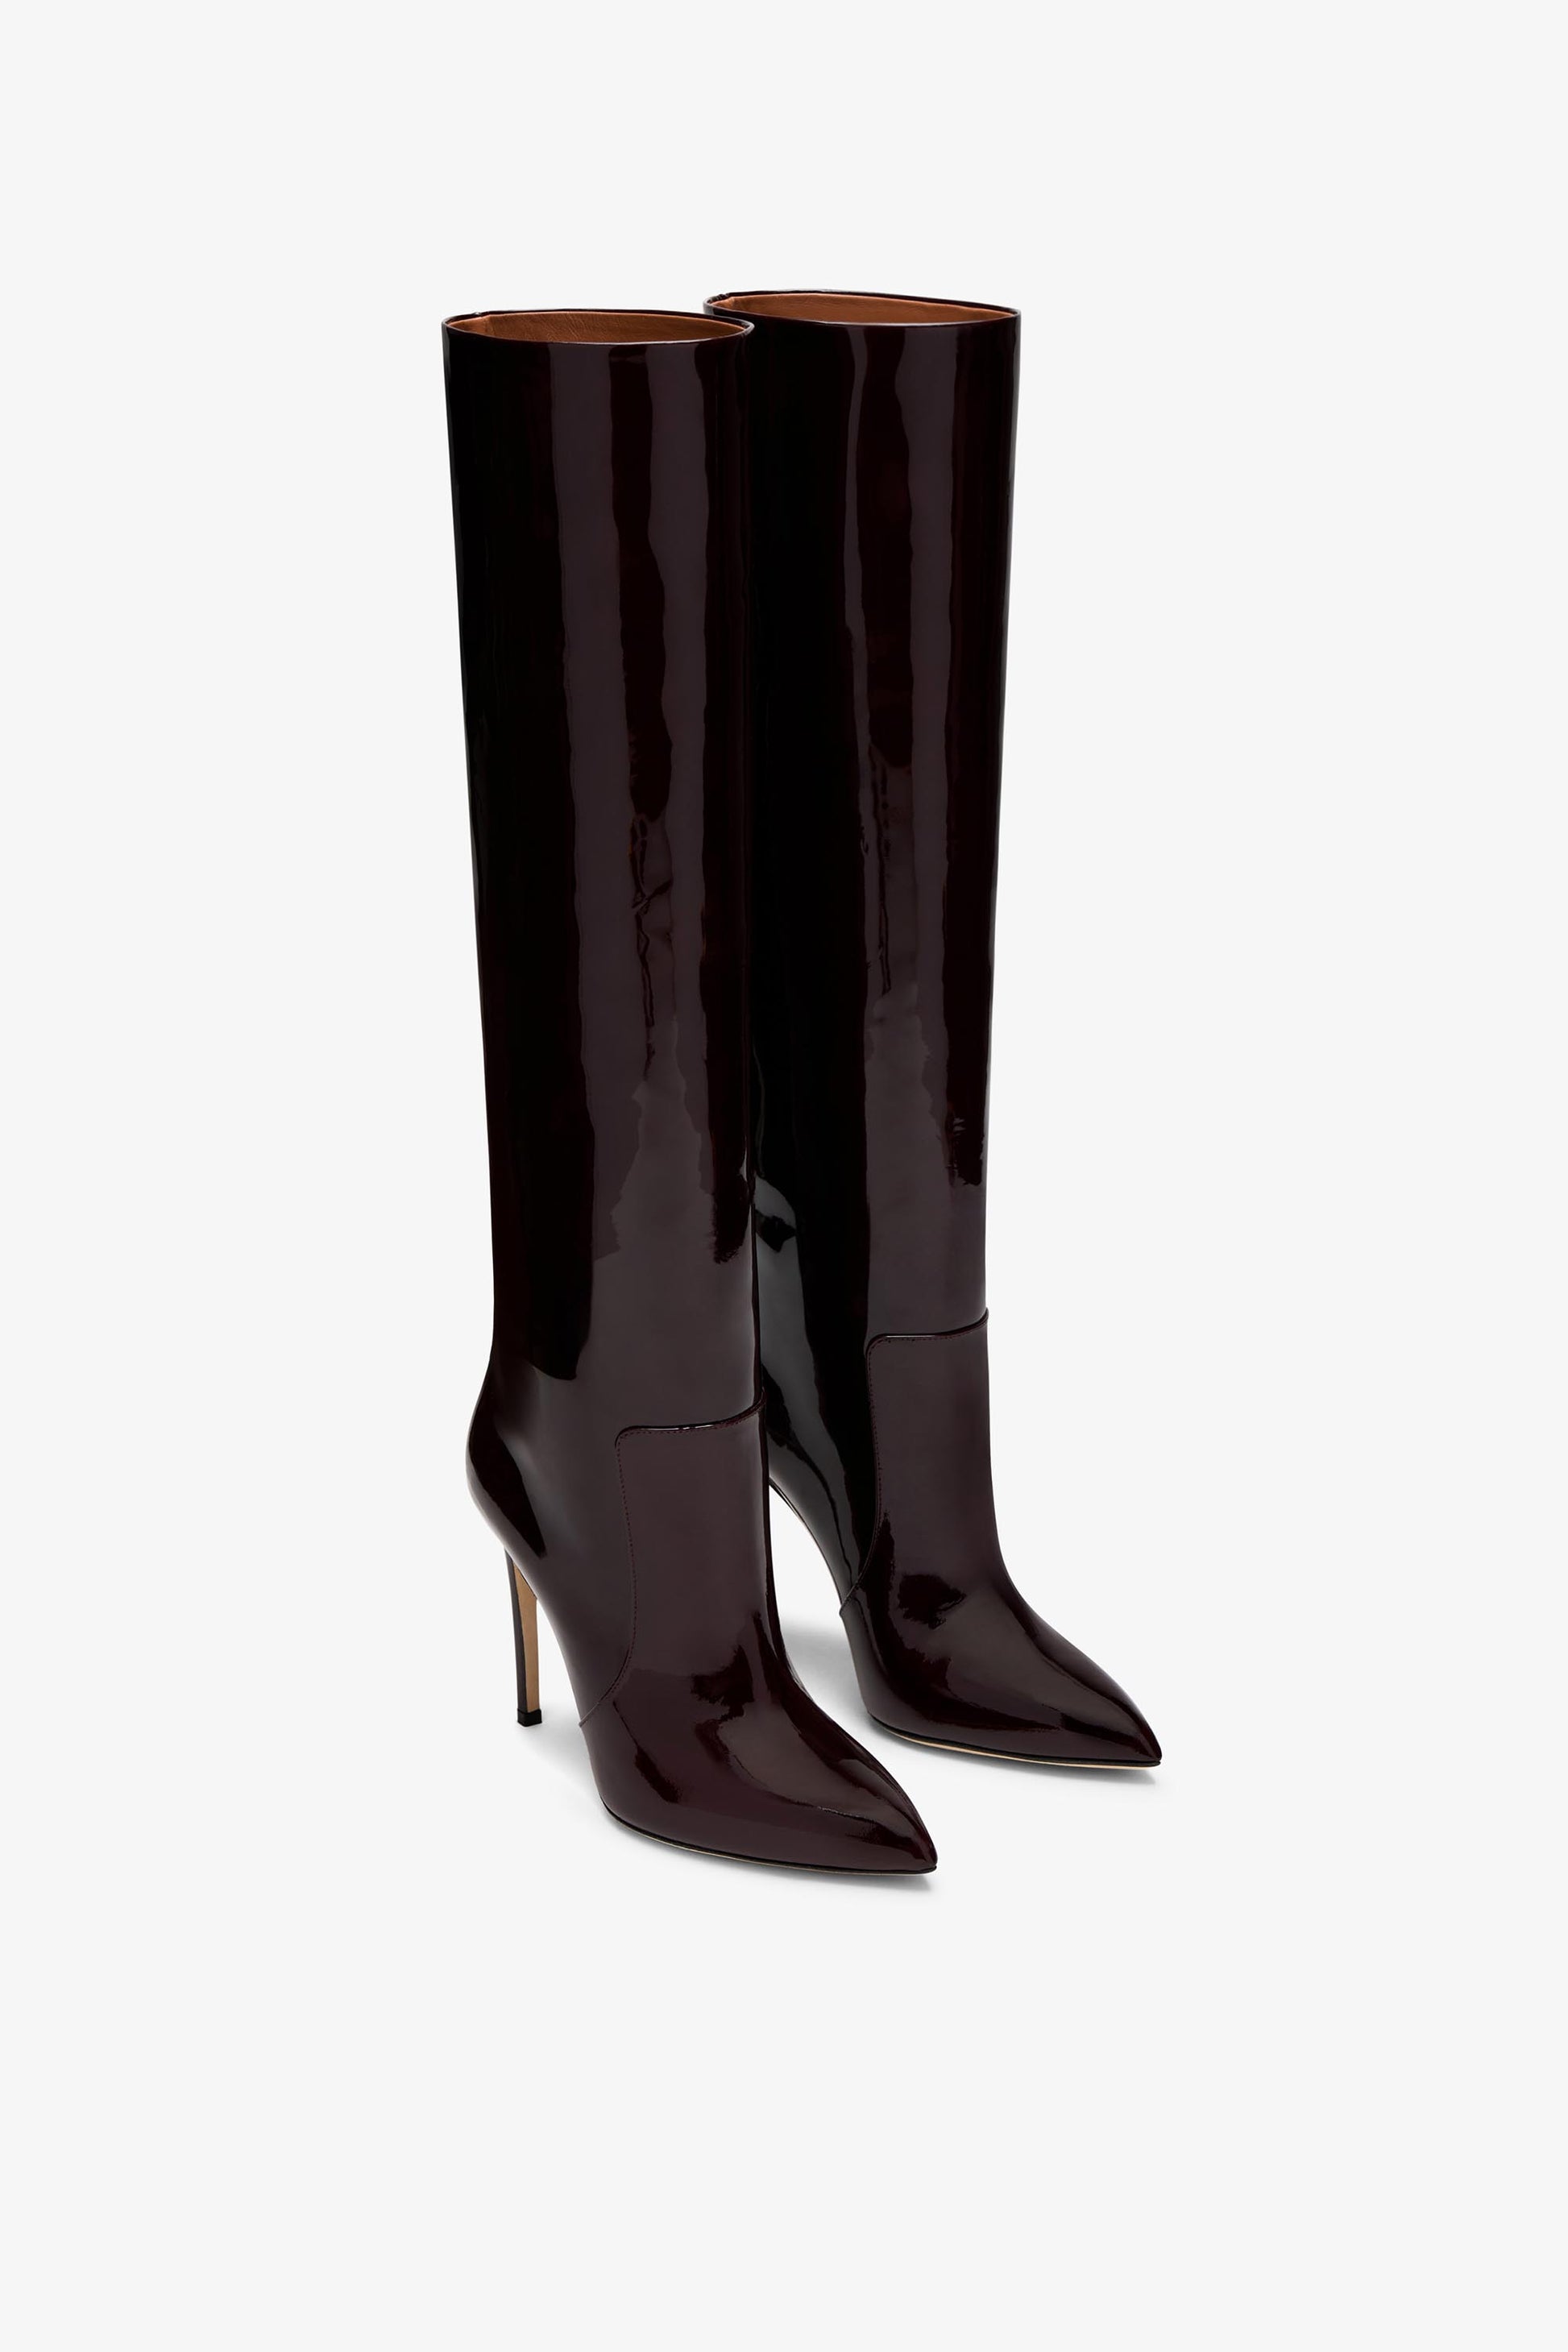 Rouge noir patent stiletto boots